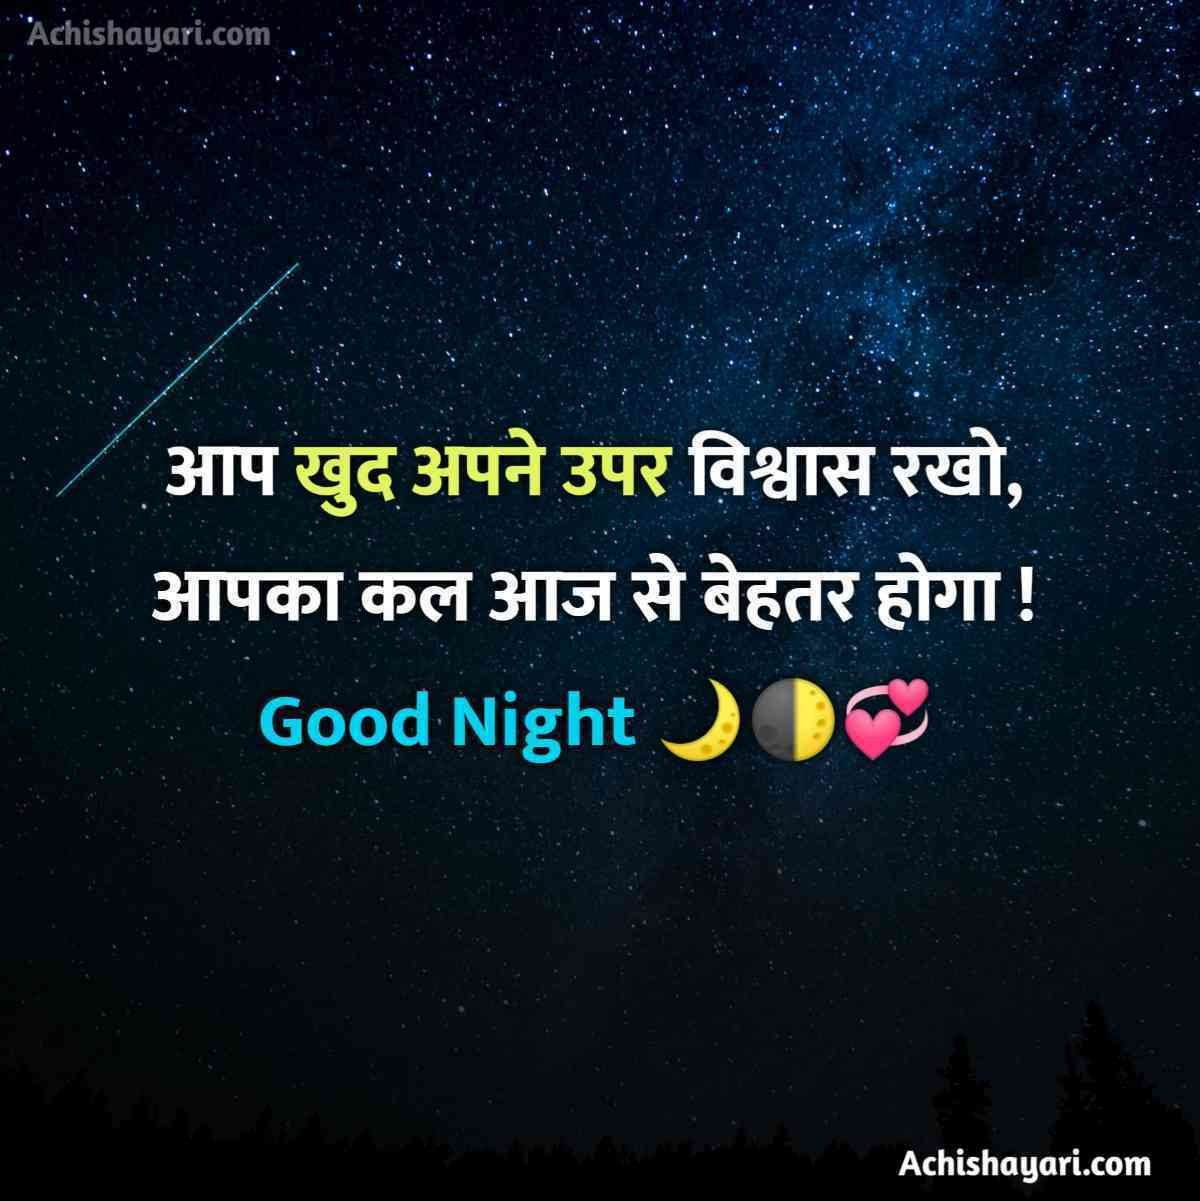 Good Night Message Image